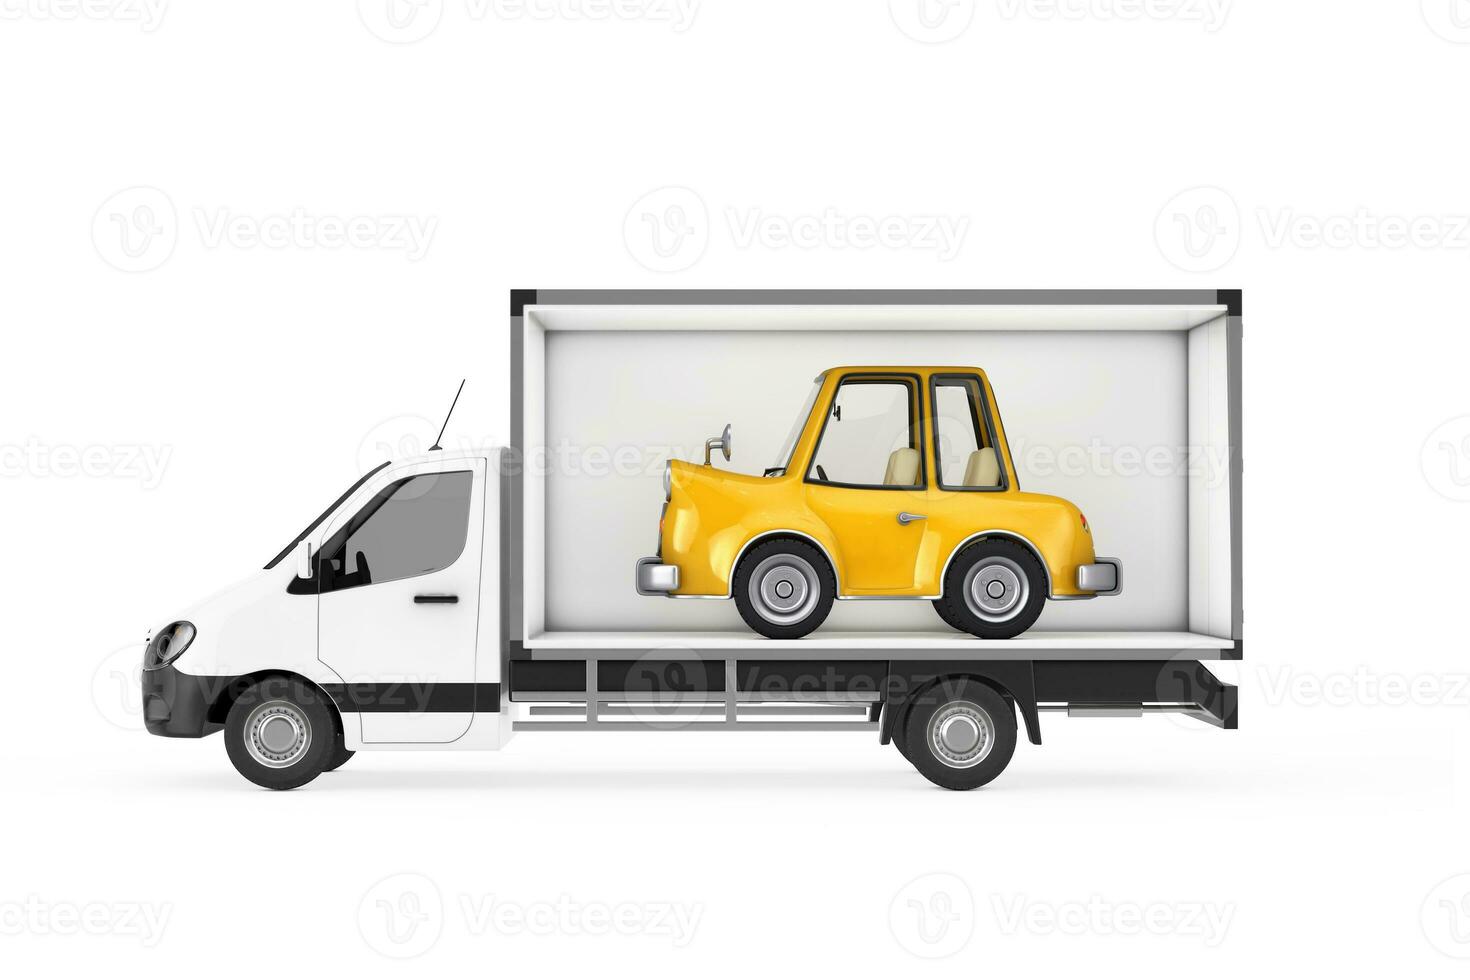 amarillo dibujos animados coche en carga compartimiento de carga camioneta microbús. 3d representación foto